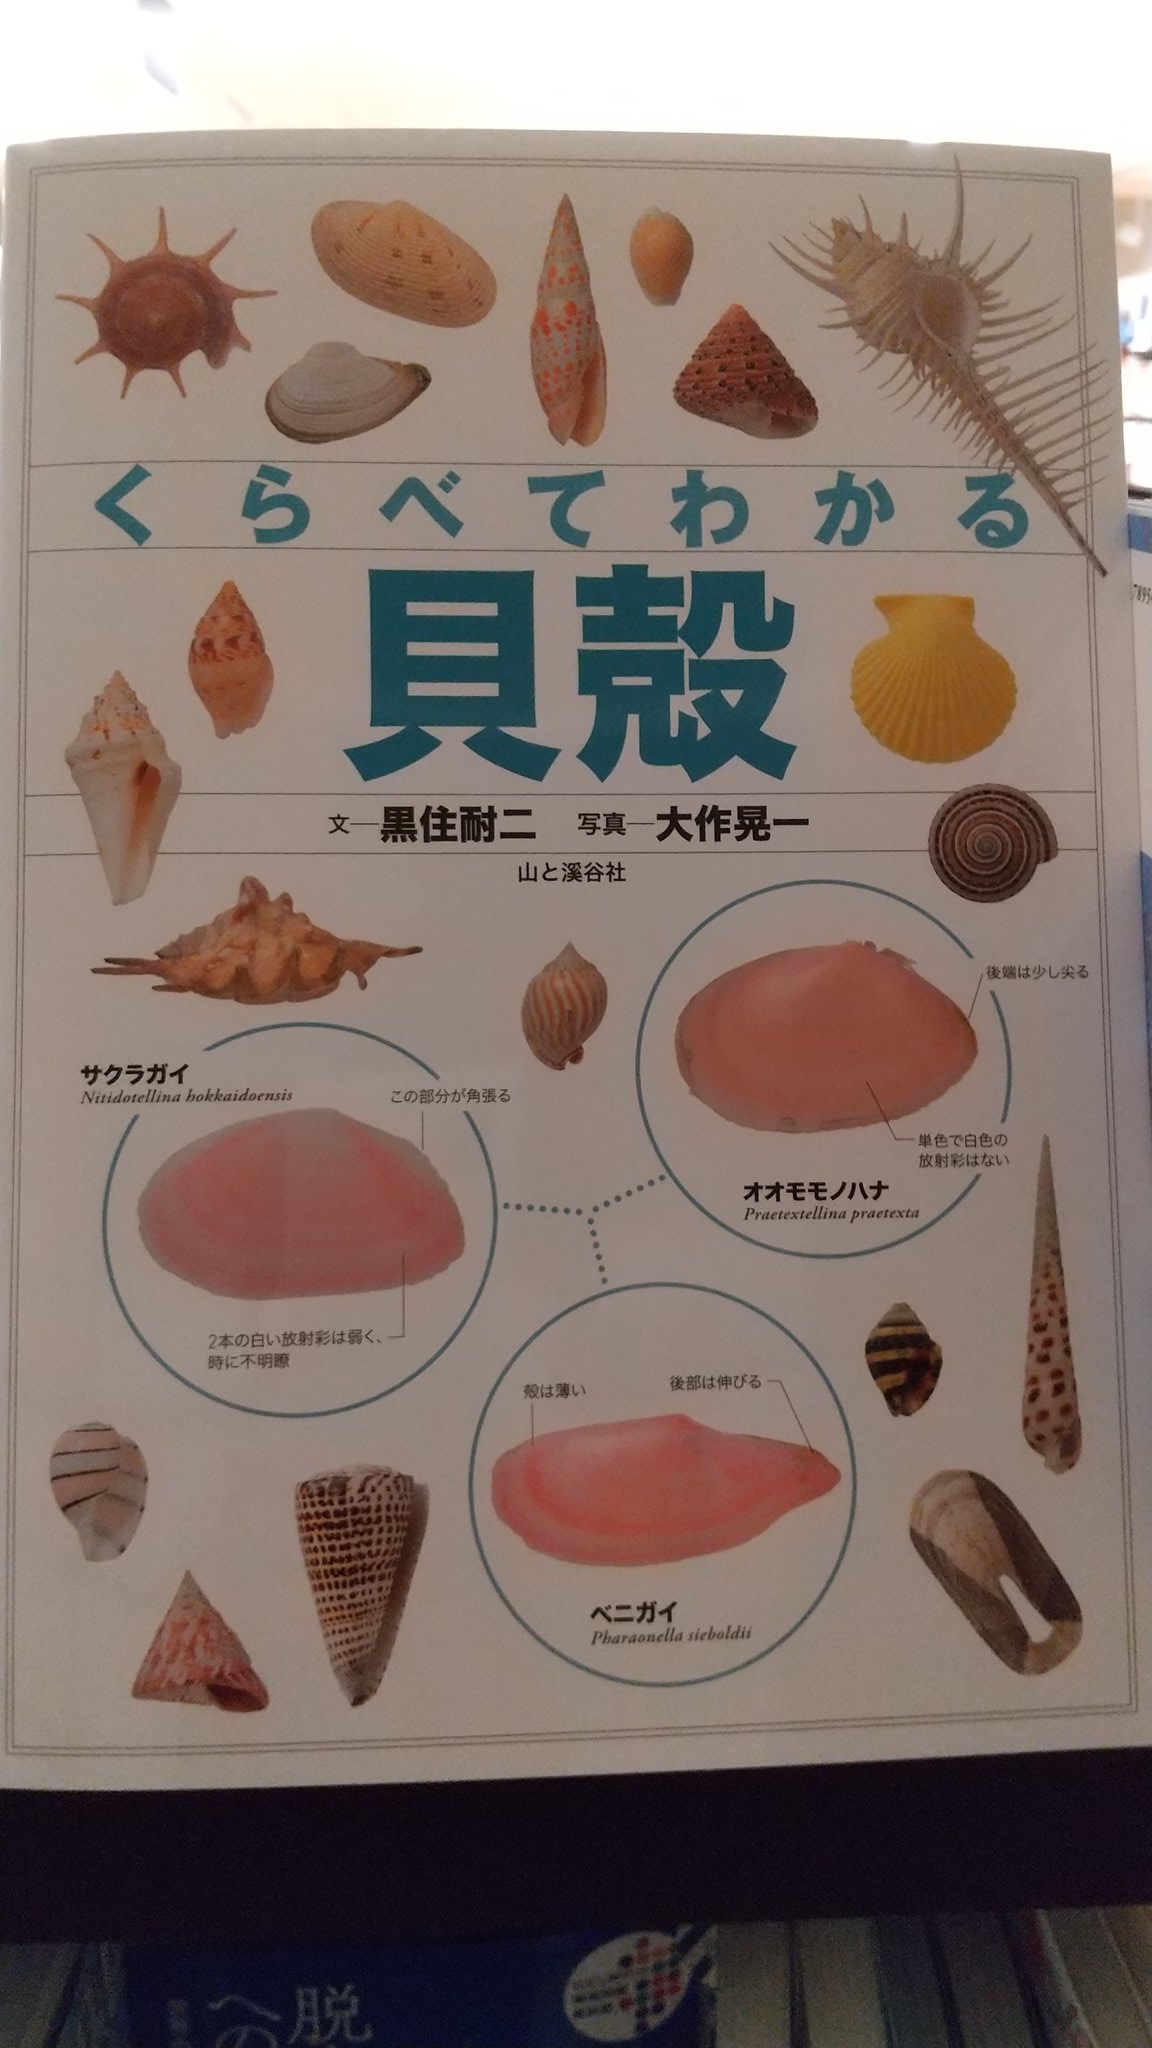 くまざわ書店 エスパル仙台店 新刊ご案内 くらべてわかる貝殻 識別ポイントで見分ける 日本の海岸で見つけられる貝殻のうちよく見られるものを中心に約６５０種を紹介 同じ分類の貝殻を近くに配置し 似たもの同士の違いがくらべてわかる